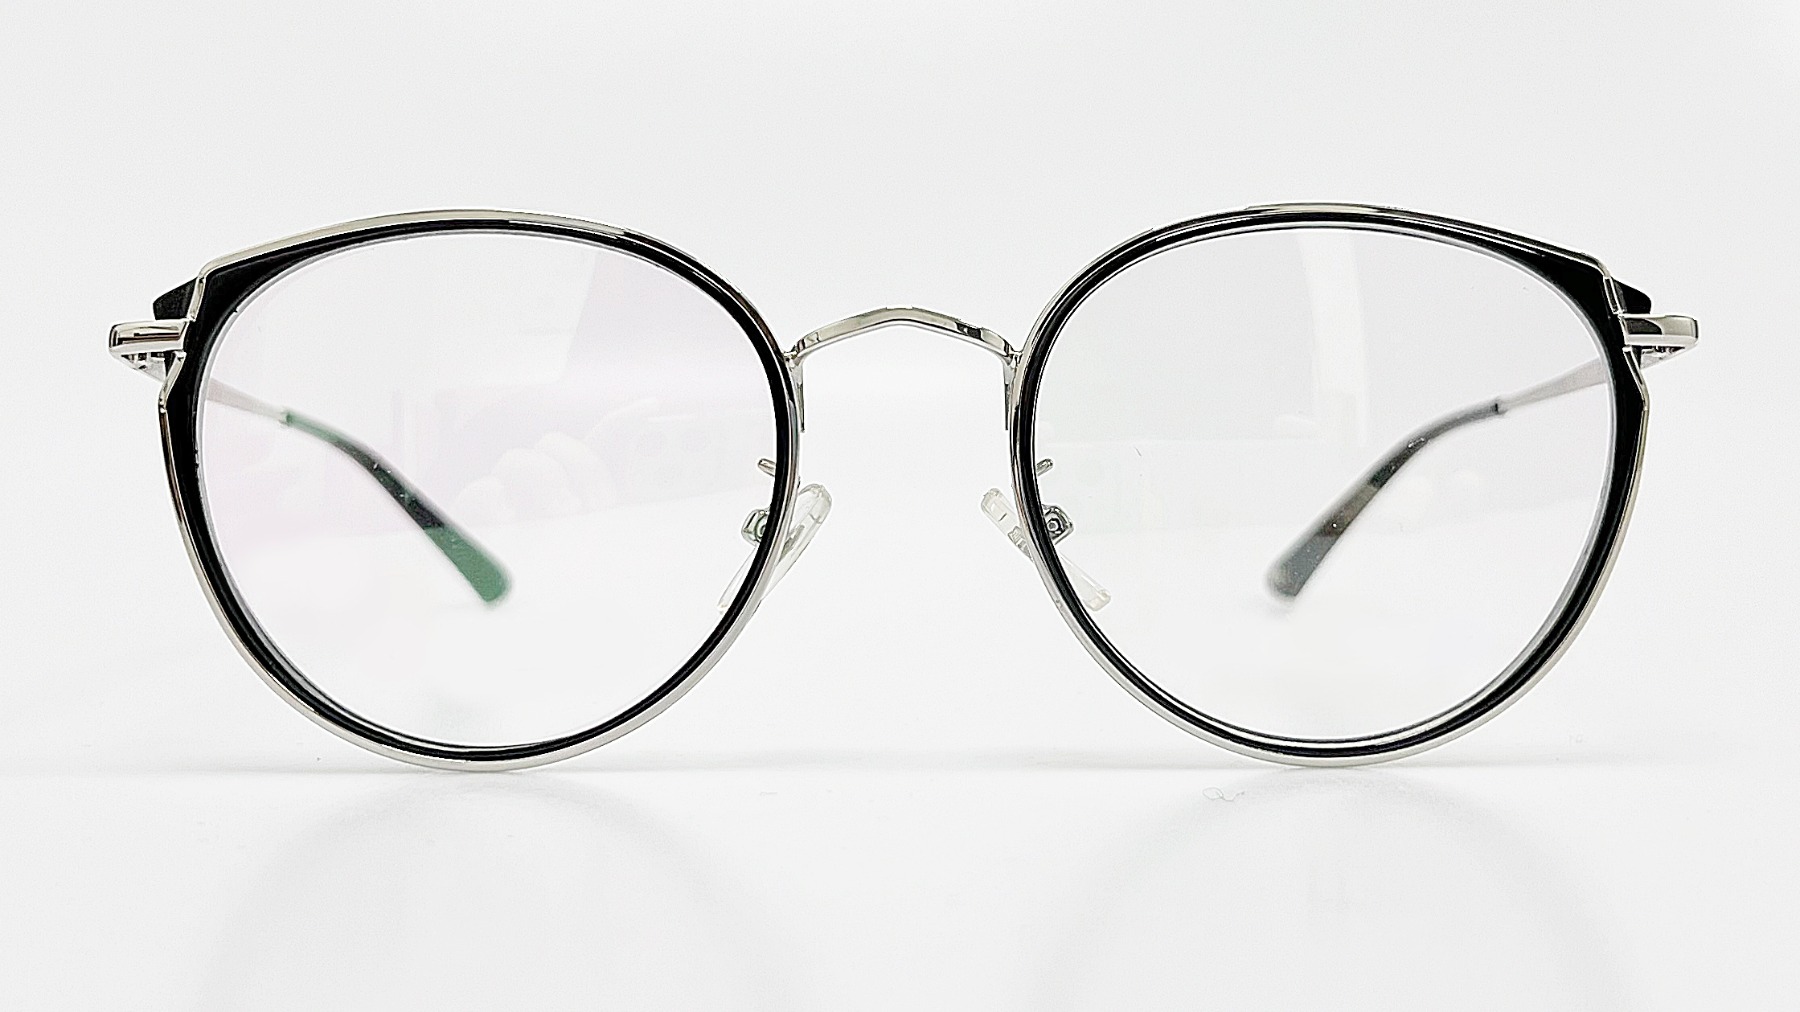 HELLEN KELLER-H26092, Korean glasses, sunglasses, eyeglasses, glasses